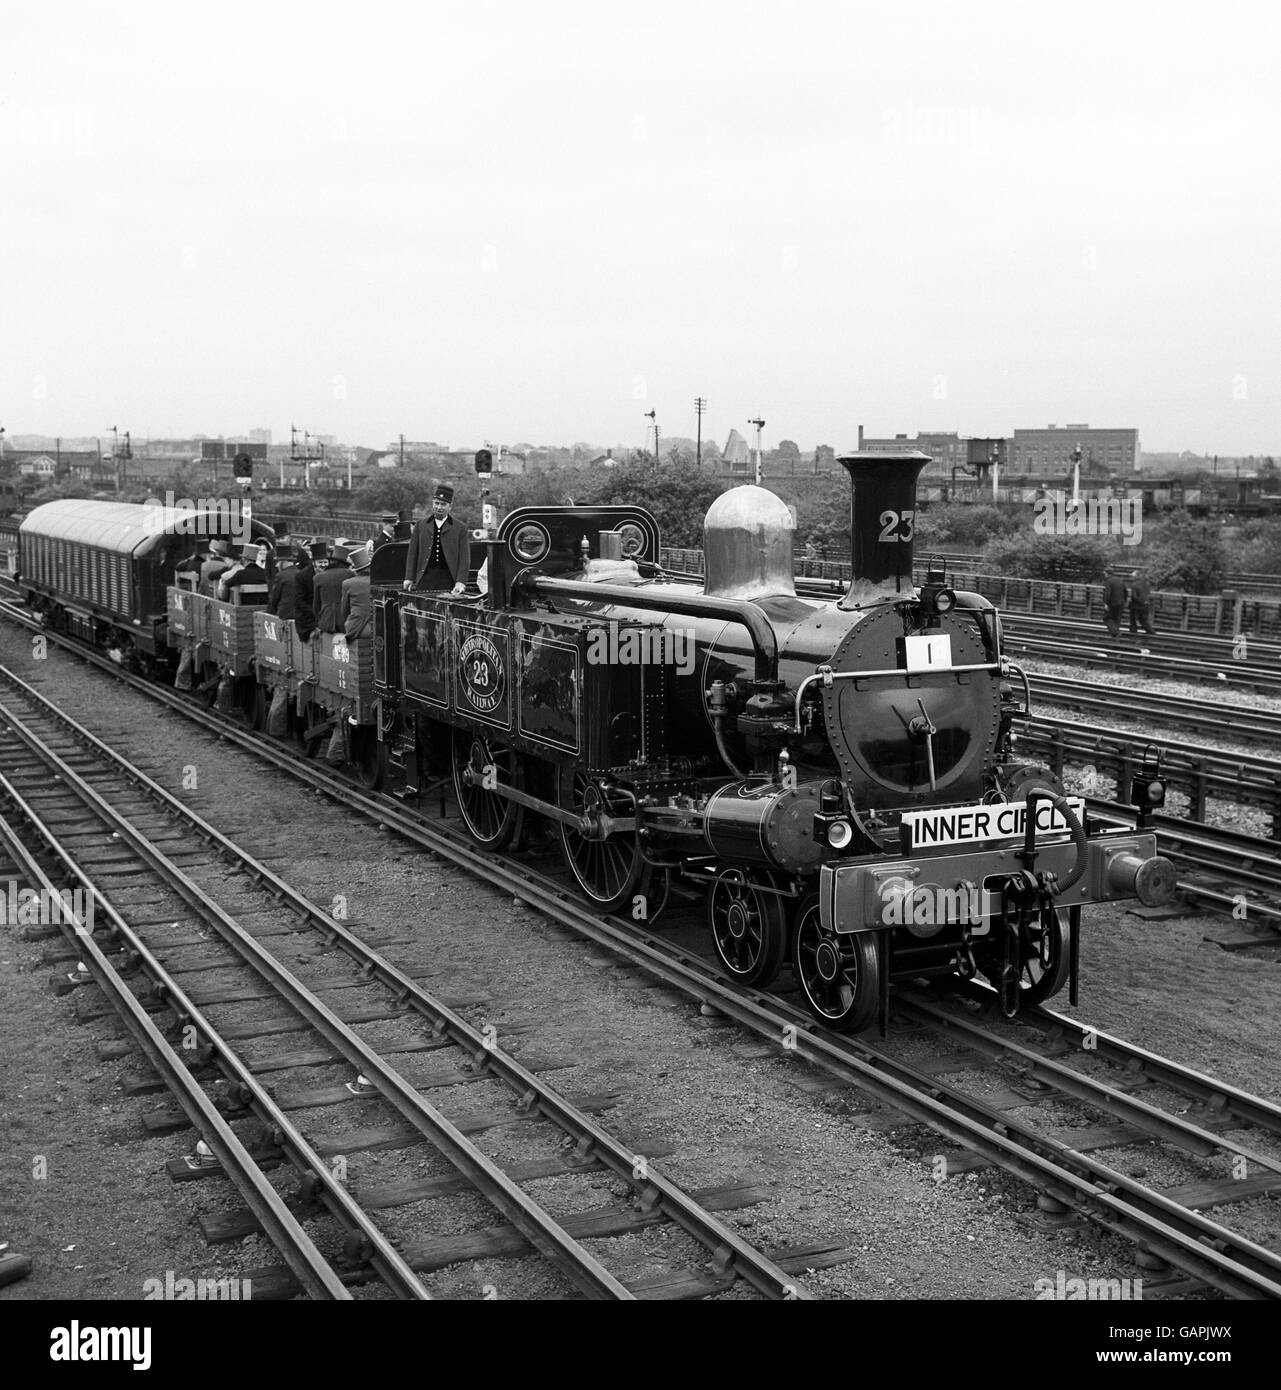 Die 1866 in Manchester gebaute Lokomotive No.23, ein Triebwerk der Metropolitan 'A' Class, leitet in Neasden ein Jubiläumsjahr als Teil einer großen Parade vergangener und gegenwärtiger Fahrzeuge zum Gedenken an den 100. Jahrestag der Londoner U-Bahn. Stockfoto